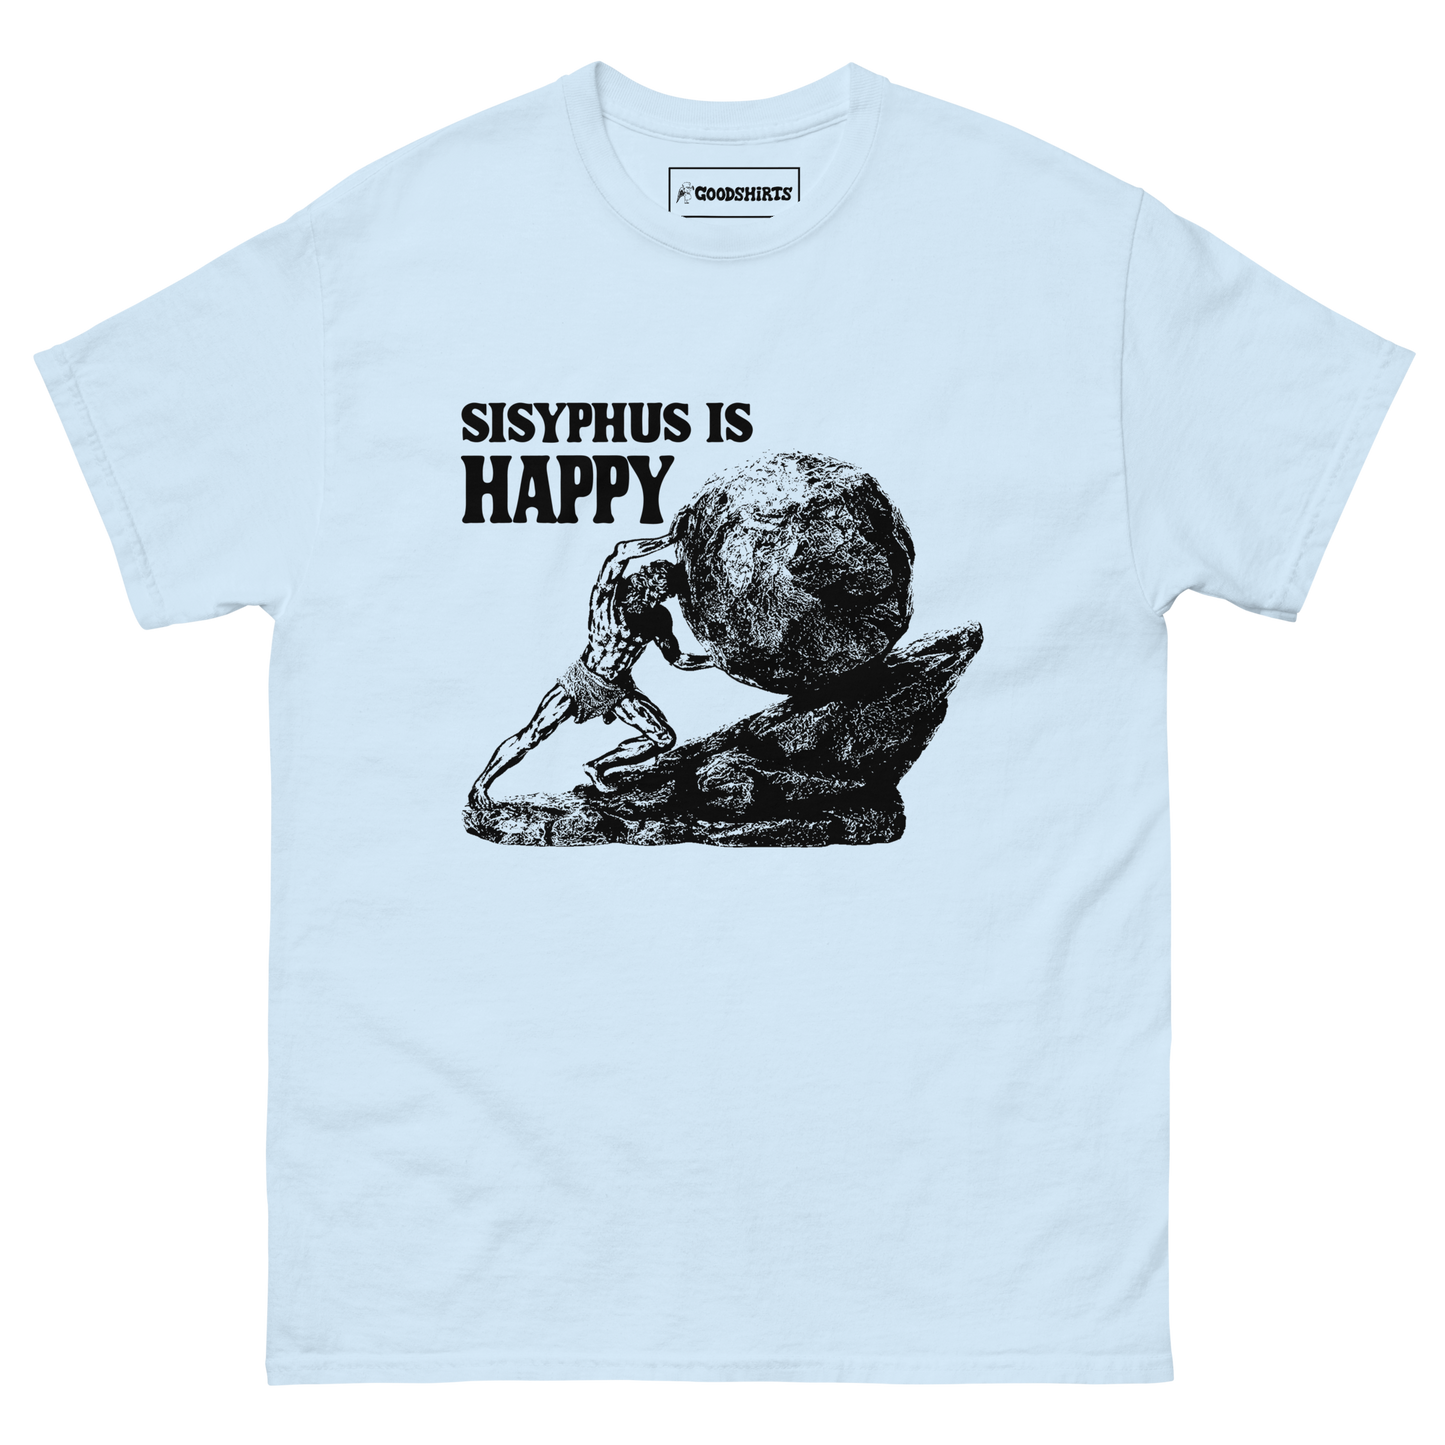 Sisyphus Is Happy.